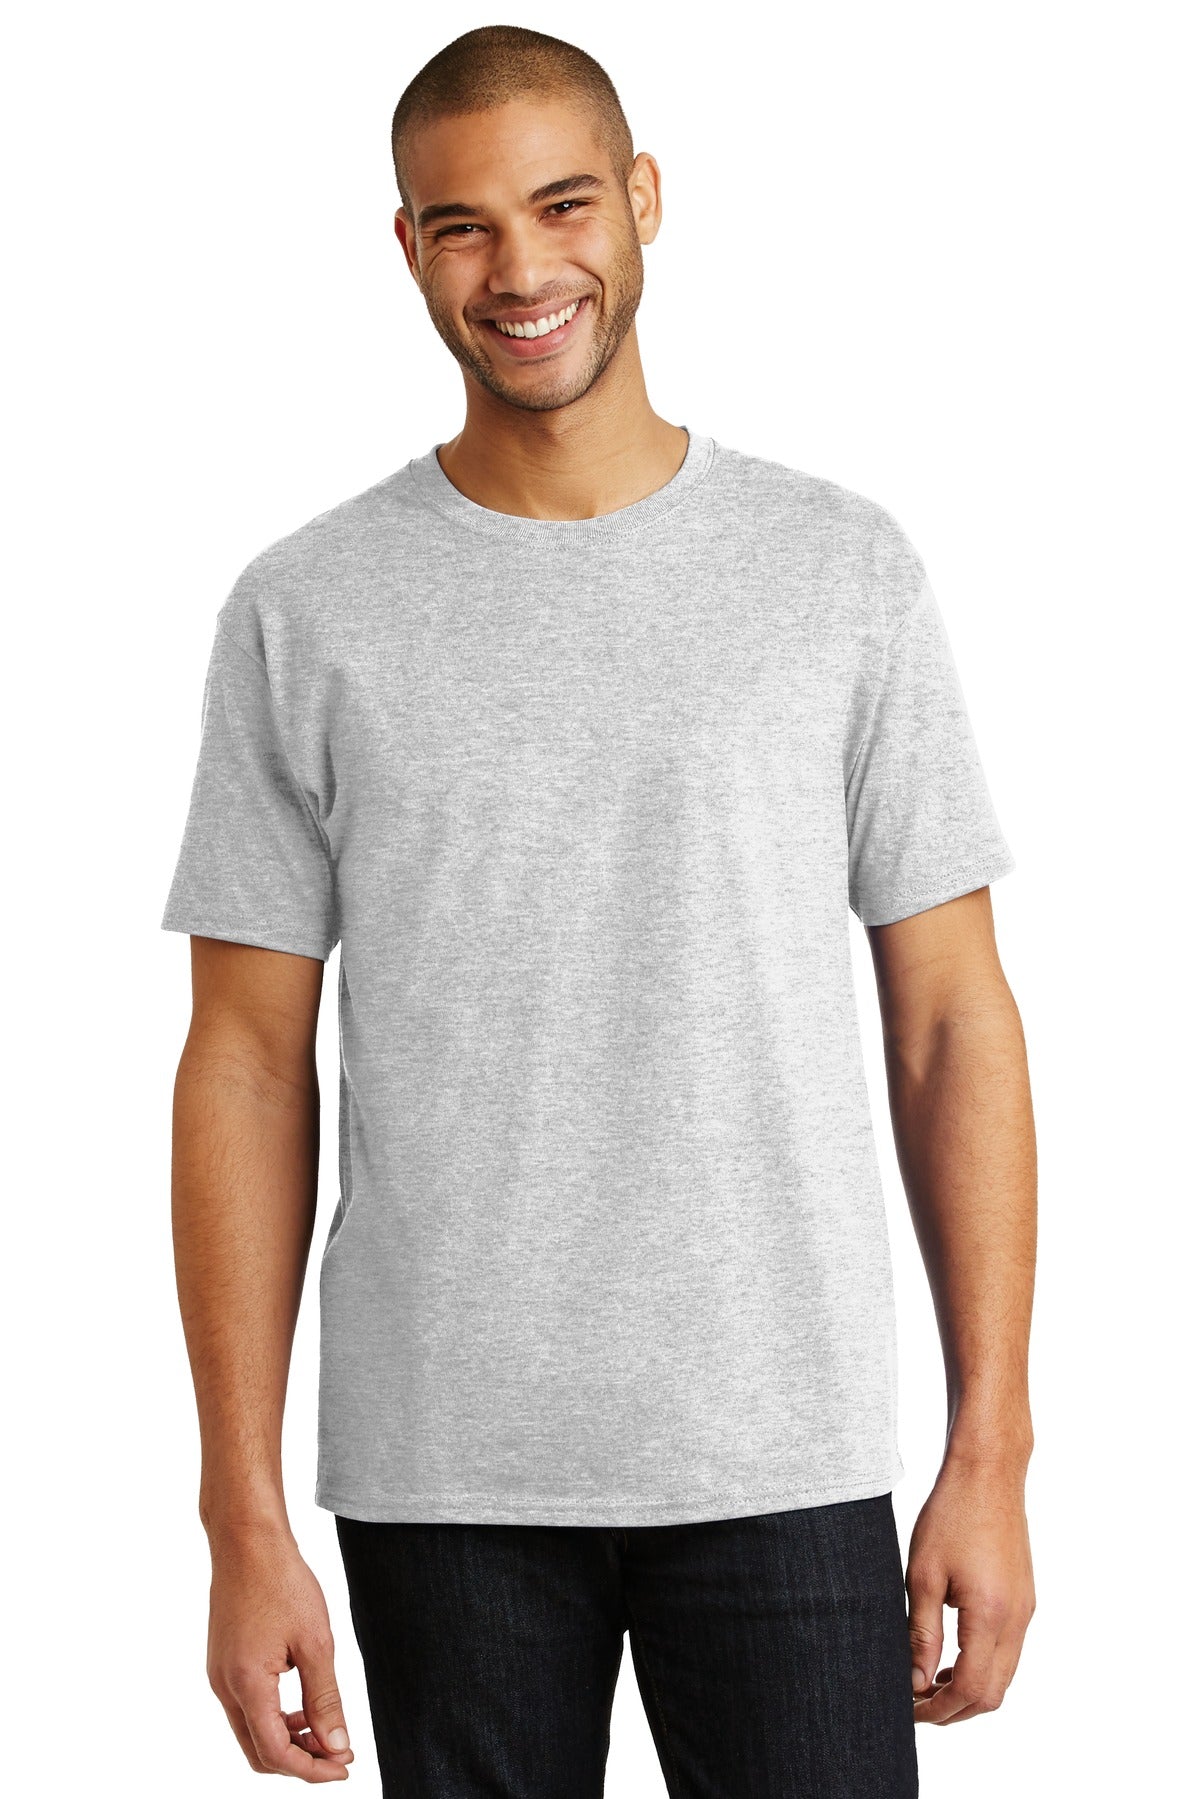 Hanes® - Authentic 100% Cotton T-Shirt. 5250 [Ash*] - DFW Impression